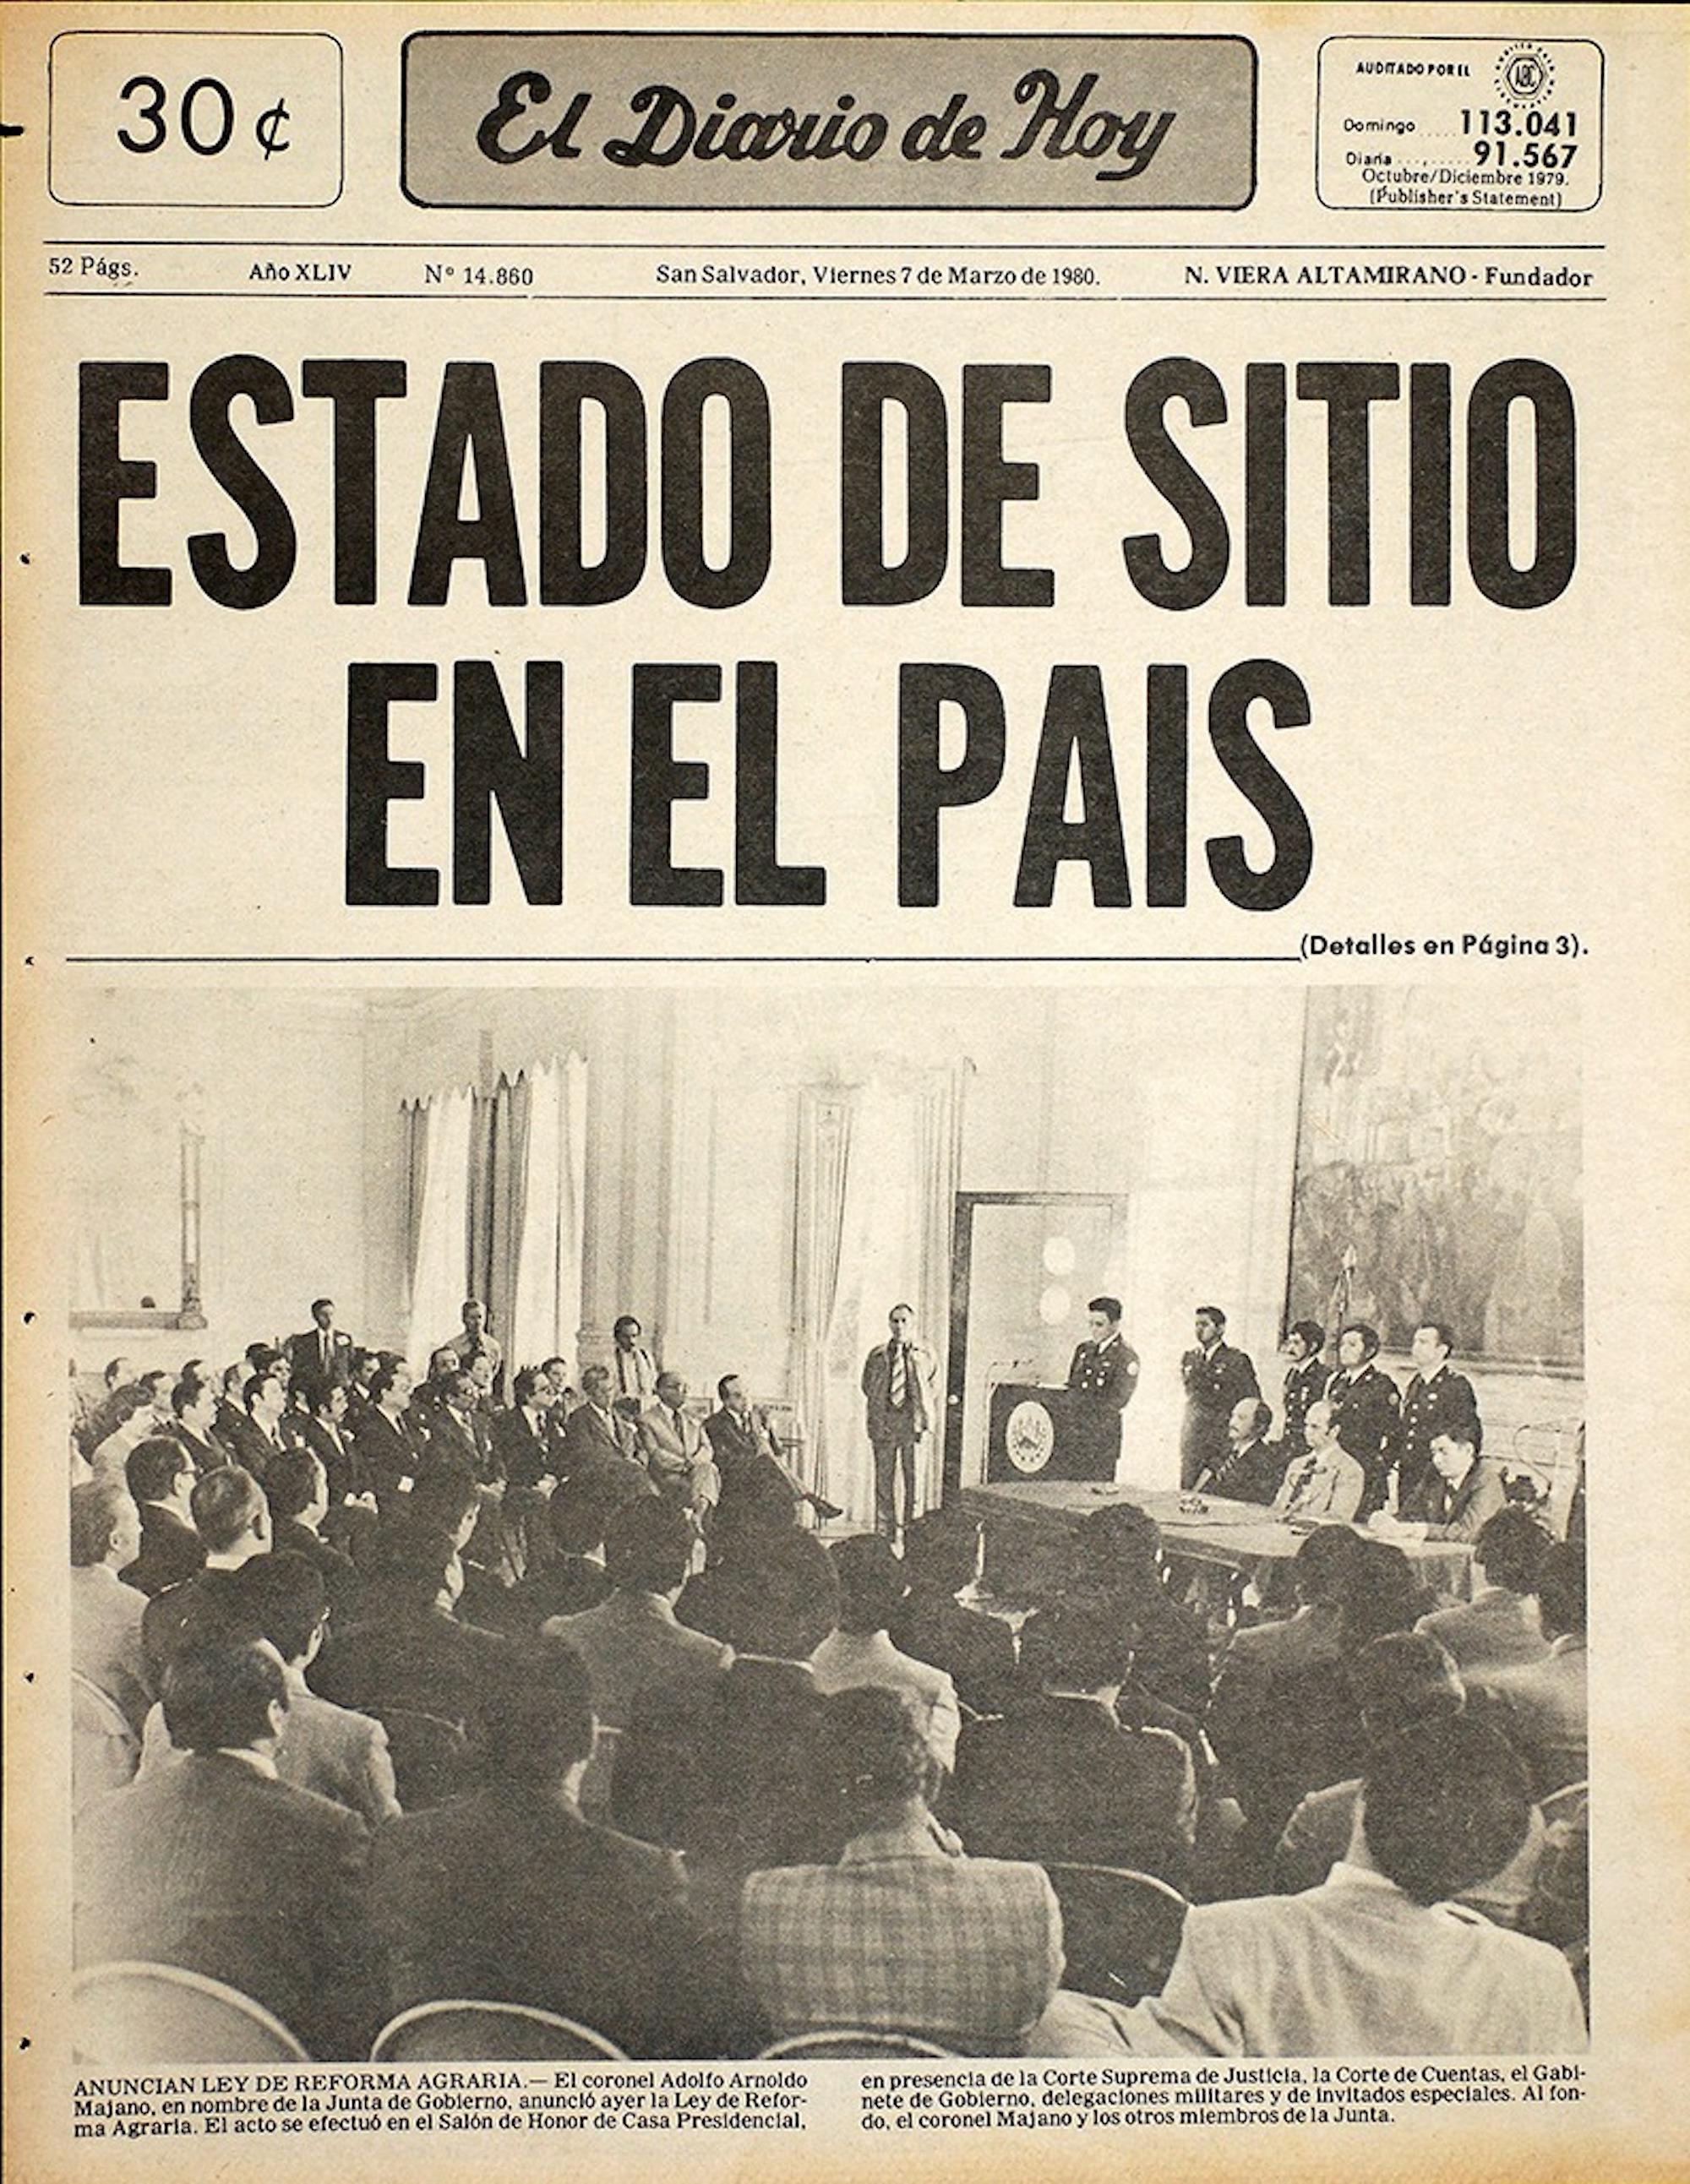 Portada de El Diario de Hoy del 7 de marzo de 1980, día en que la Junta de Gobierno presentó su propuesta de reforma agraria.